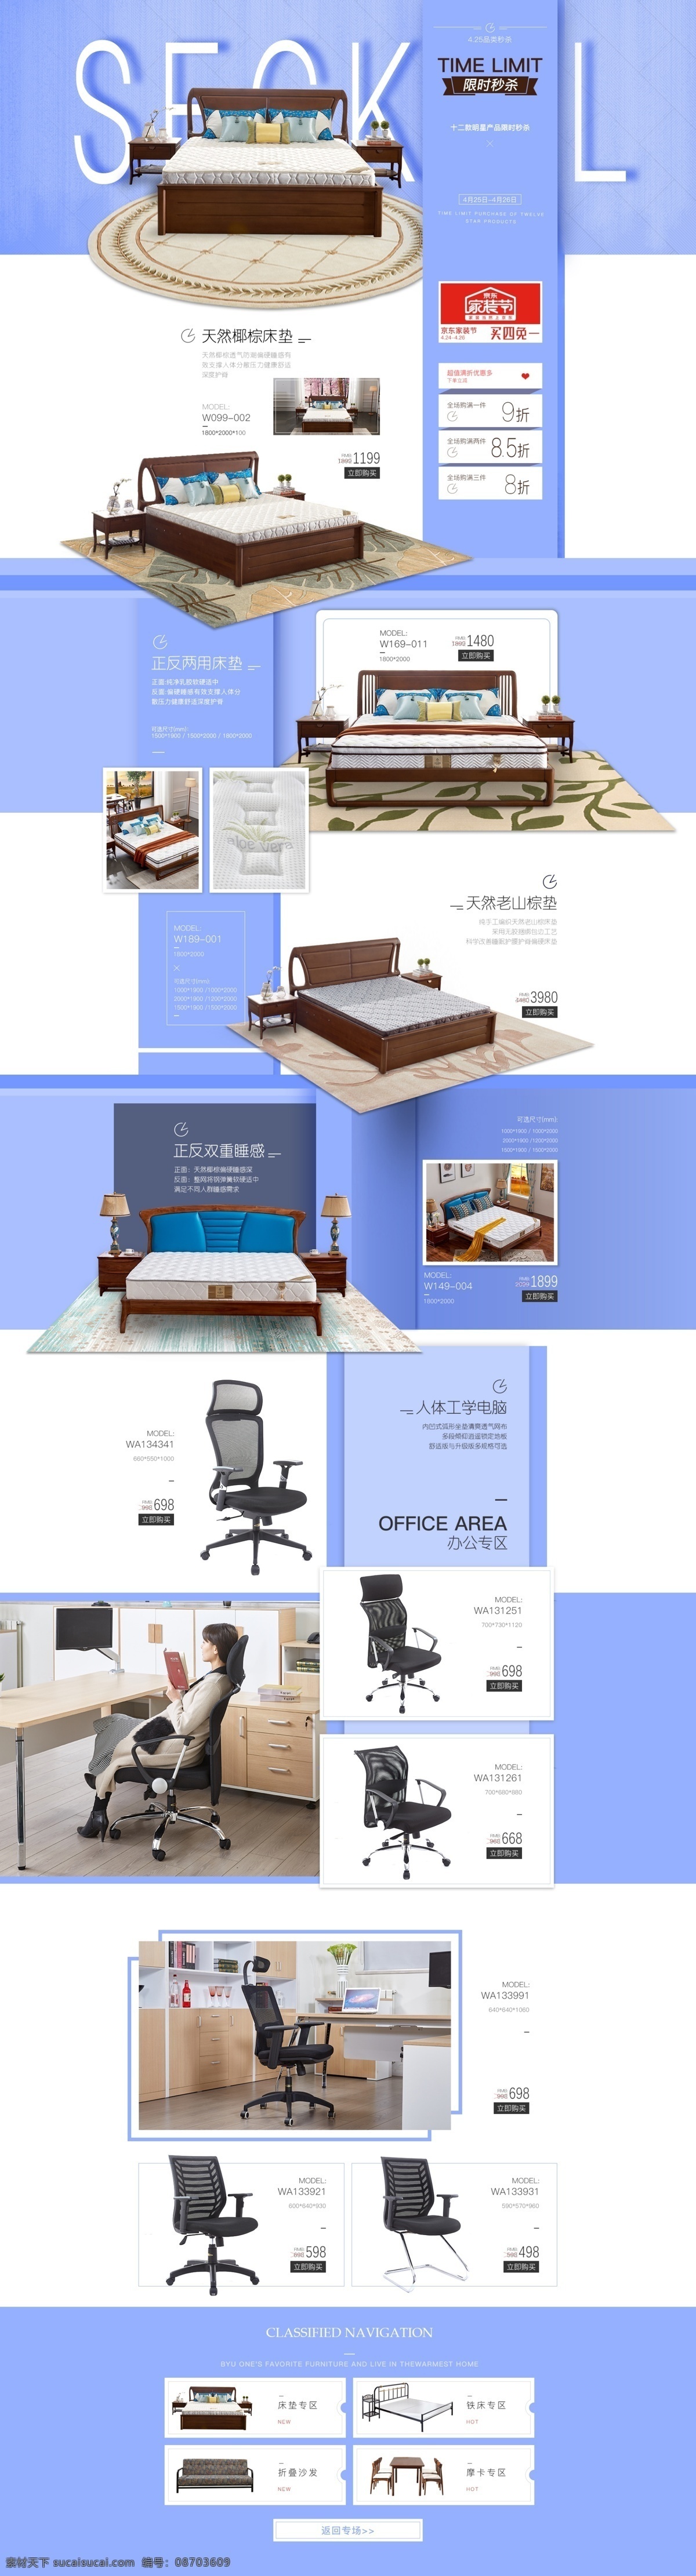 家具 产品展示 简洁 排版 专题 蓝色 家具展示 自由版式 魔板